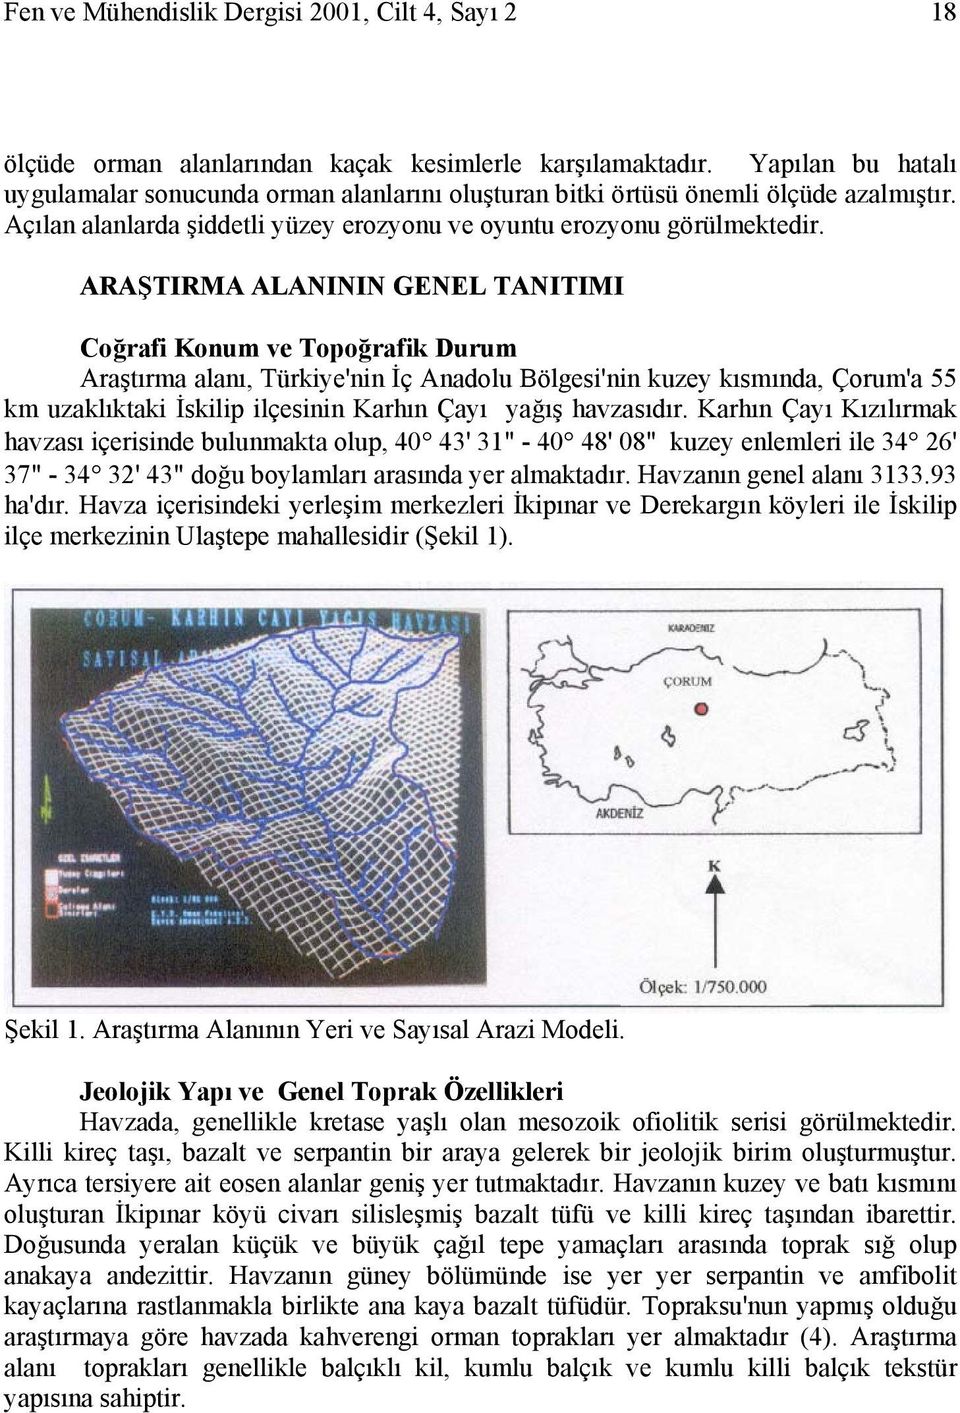 ARAŞTIRMA ALANININ GENEL TANITIMI Coğrafi Konum ve Topoğrafik Durum Araştırma alanı, Türkiye'nin İç Anadolu Bölgesi'nin kuzey kısmında, Çorum'a 55 km uzaklıktaki İskilip ilçesinin Karhın Çayı yağış